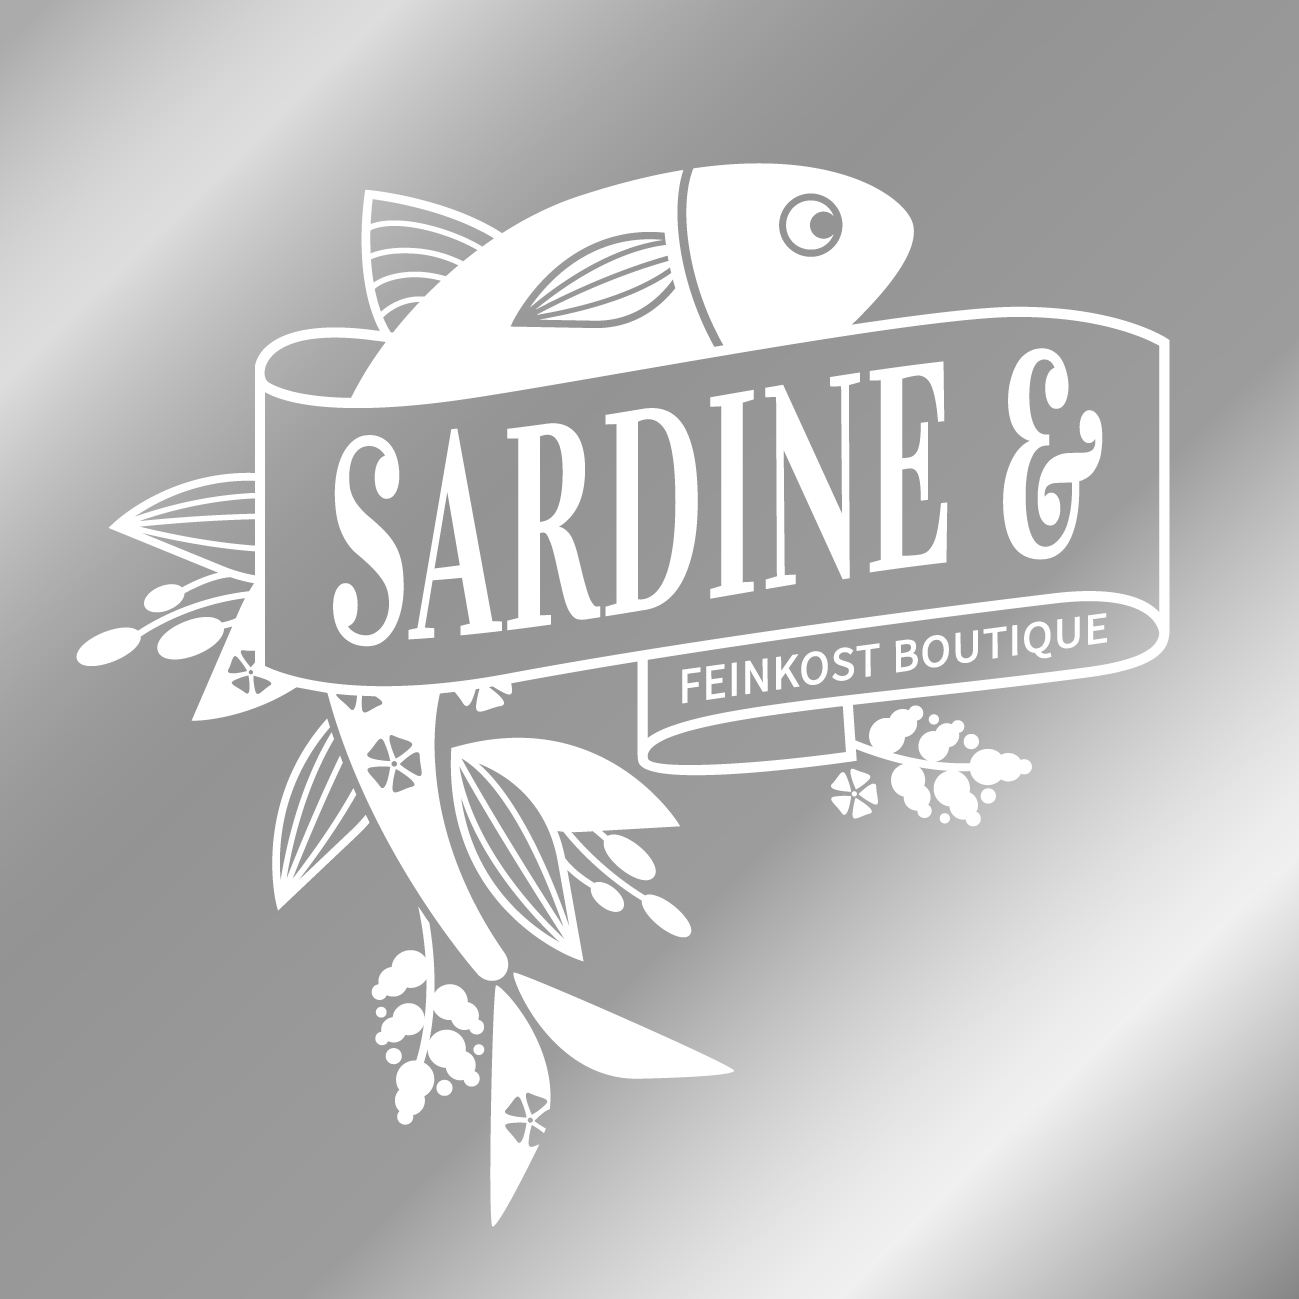 Hintergrund silber-Logo-Sardine